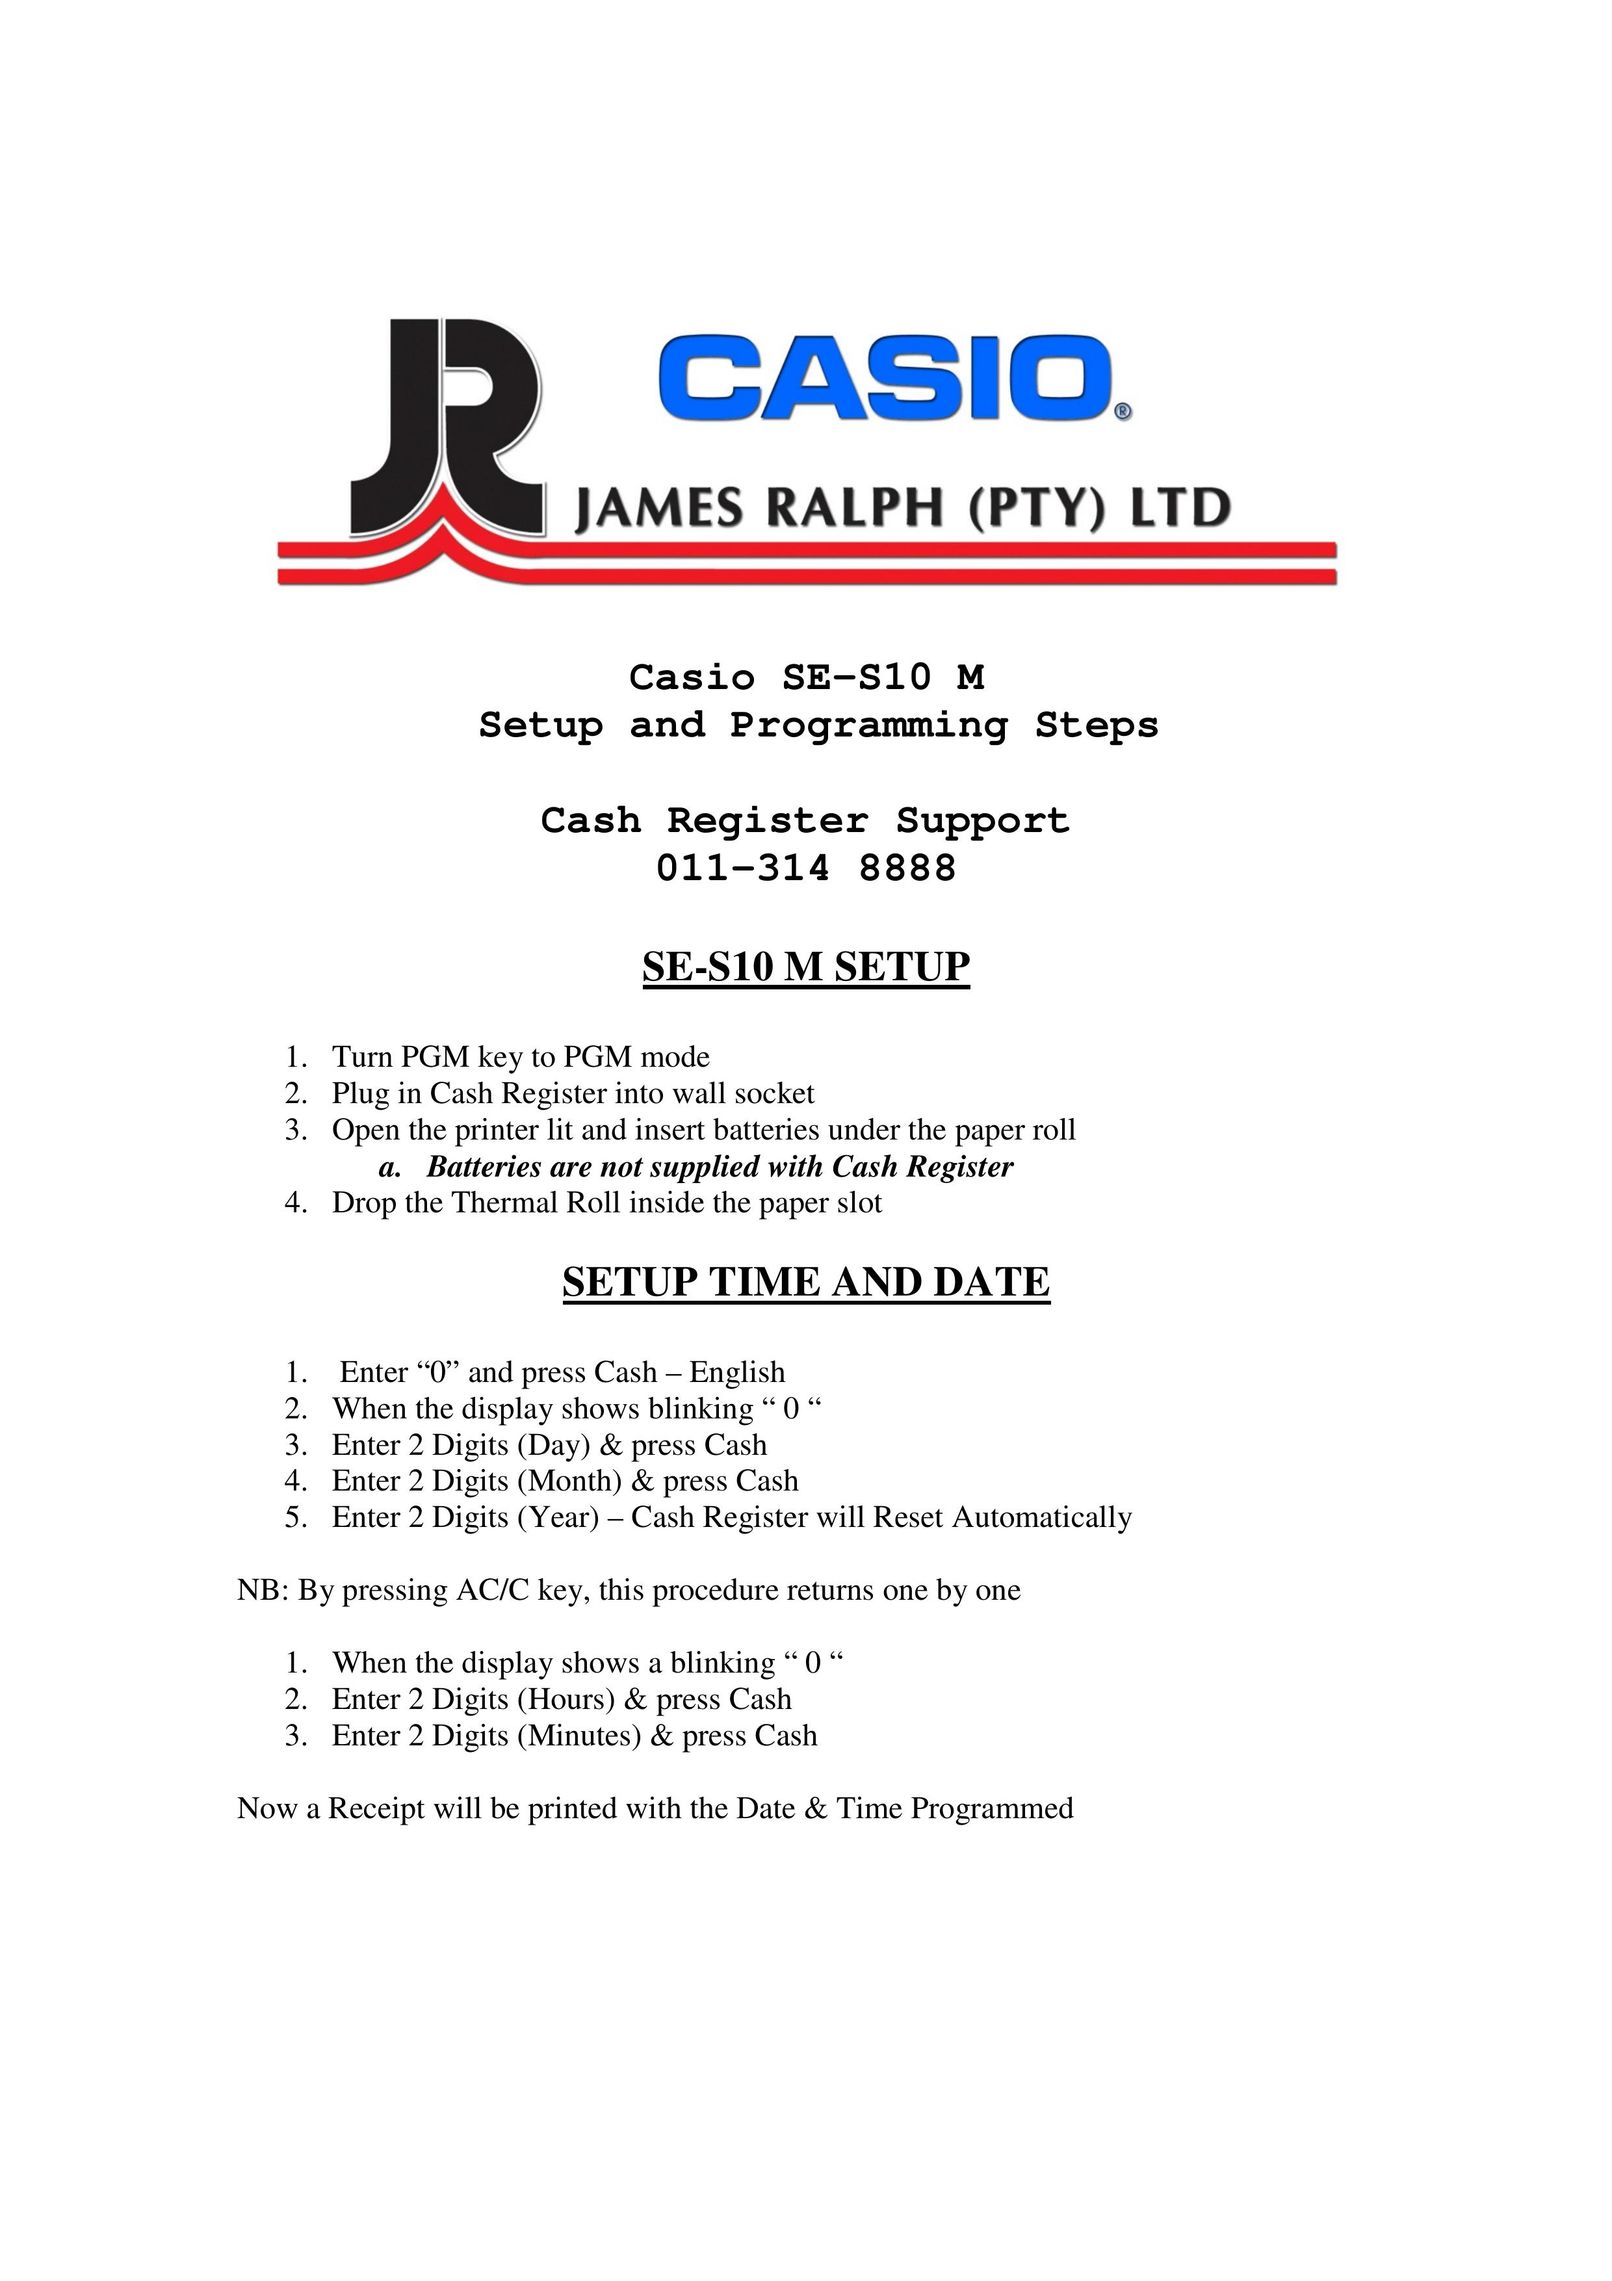 Casio SE-S10 M Cash Register User Manual